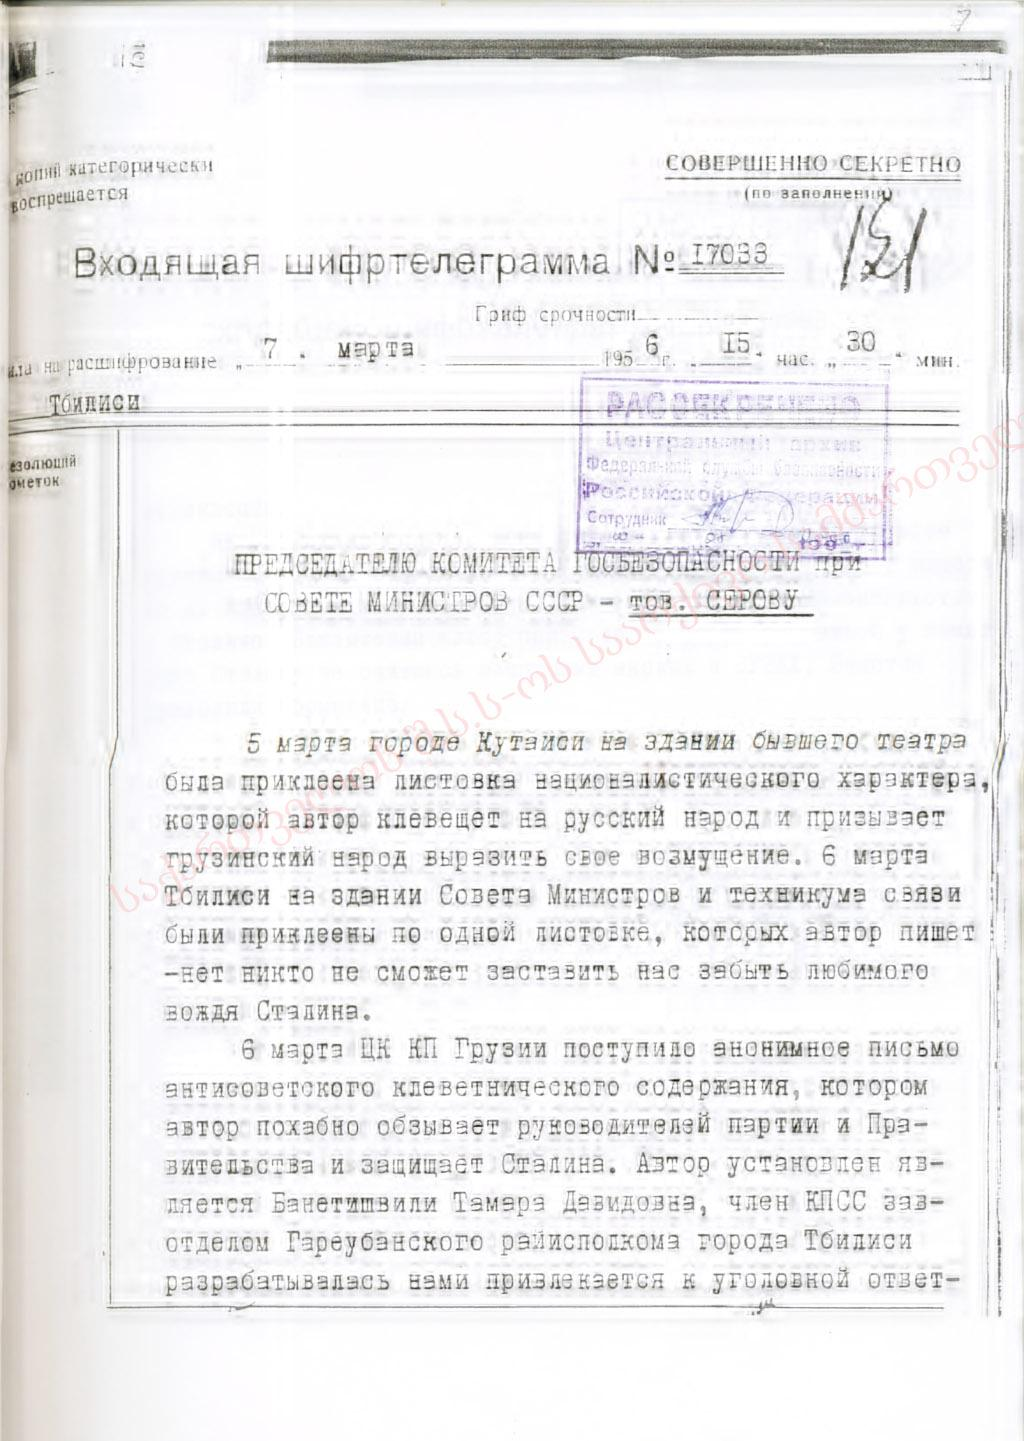 Входящие шифрованные телеграммы, рассекреченные ФСБ Российской Федерации, о событиях 5-9 марта 1956 г. Шифртелеграмма № 17033 от 7 марта 1956 г.